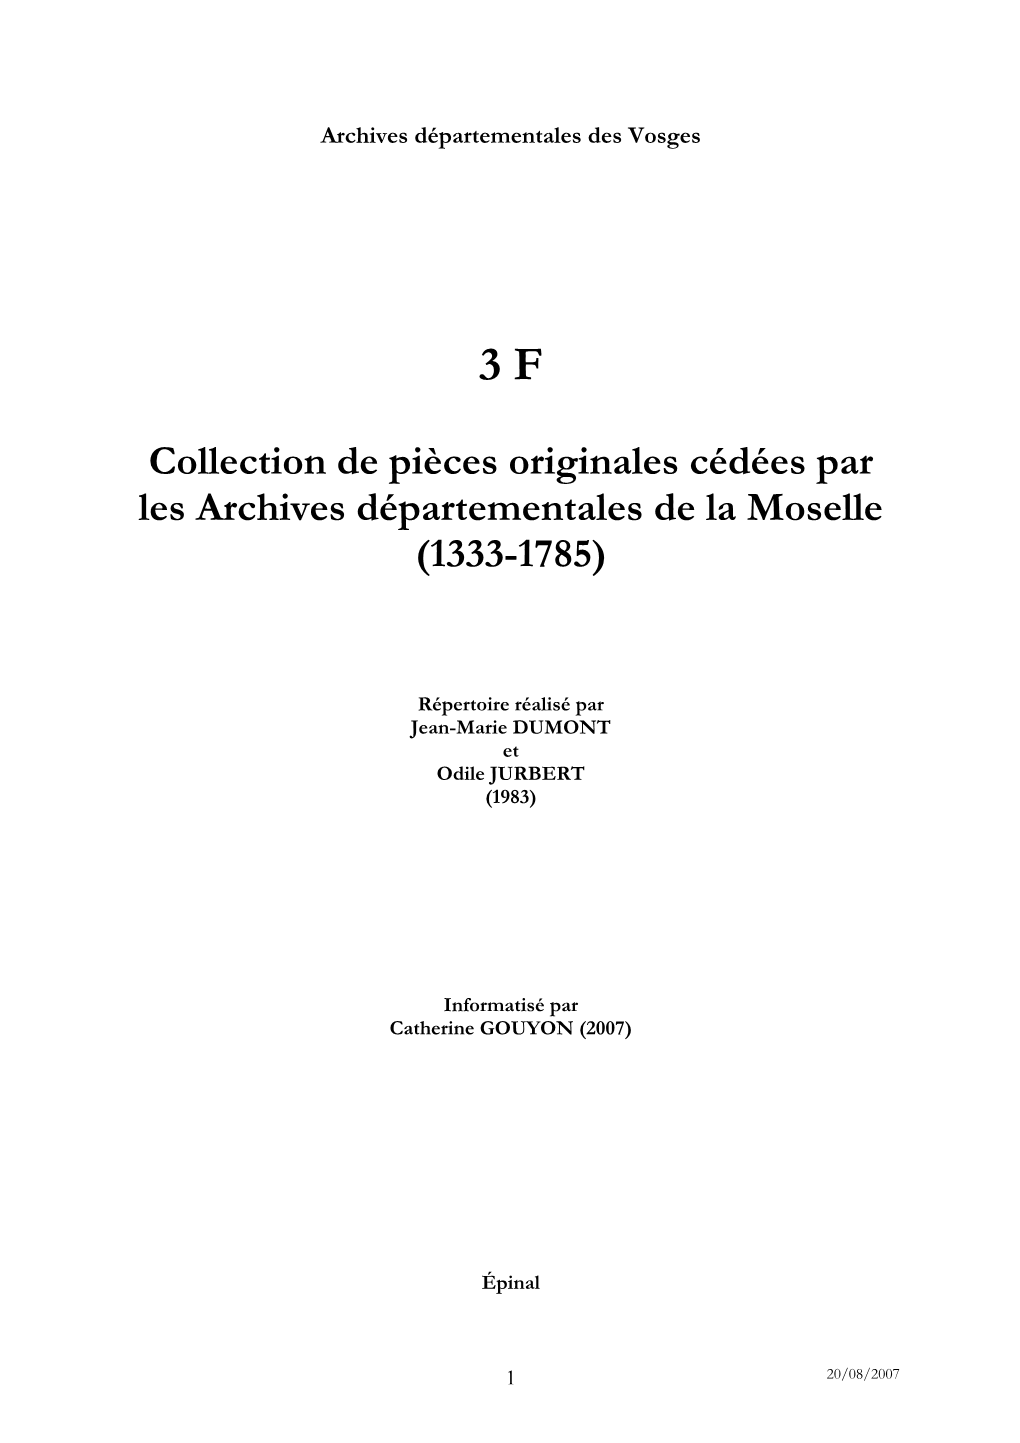 Inventaire De La Collection De Pièces Originales Cédées Par Les Archives